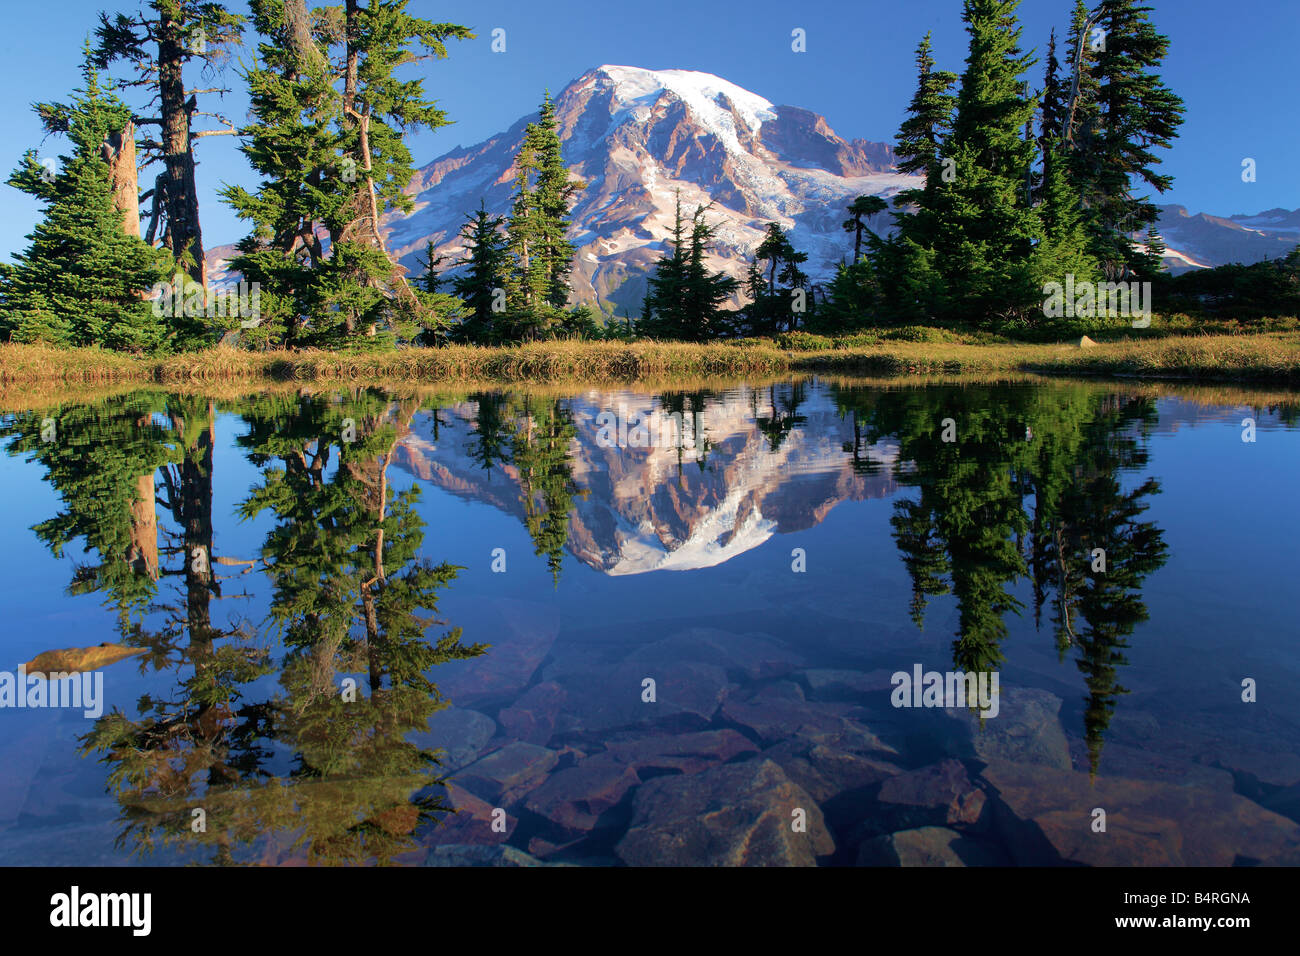 Mountain tarn riflettendo Mount Rainier all'alba, il parco nazionale del monte Rainier, Washington, Stati Uniti d'America Foto Stock